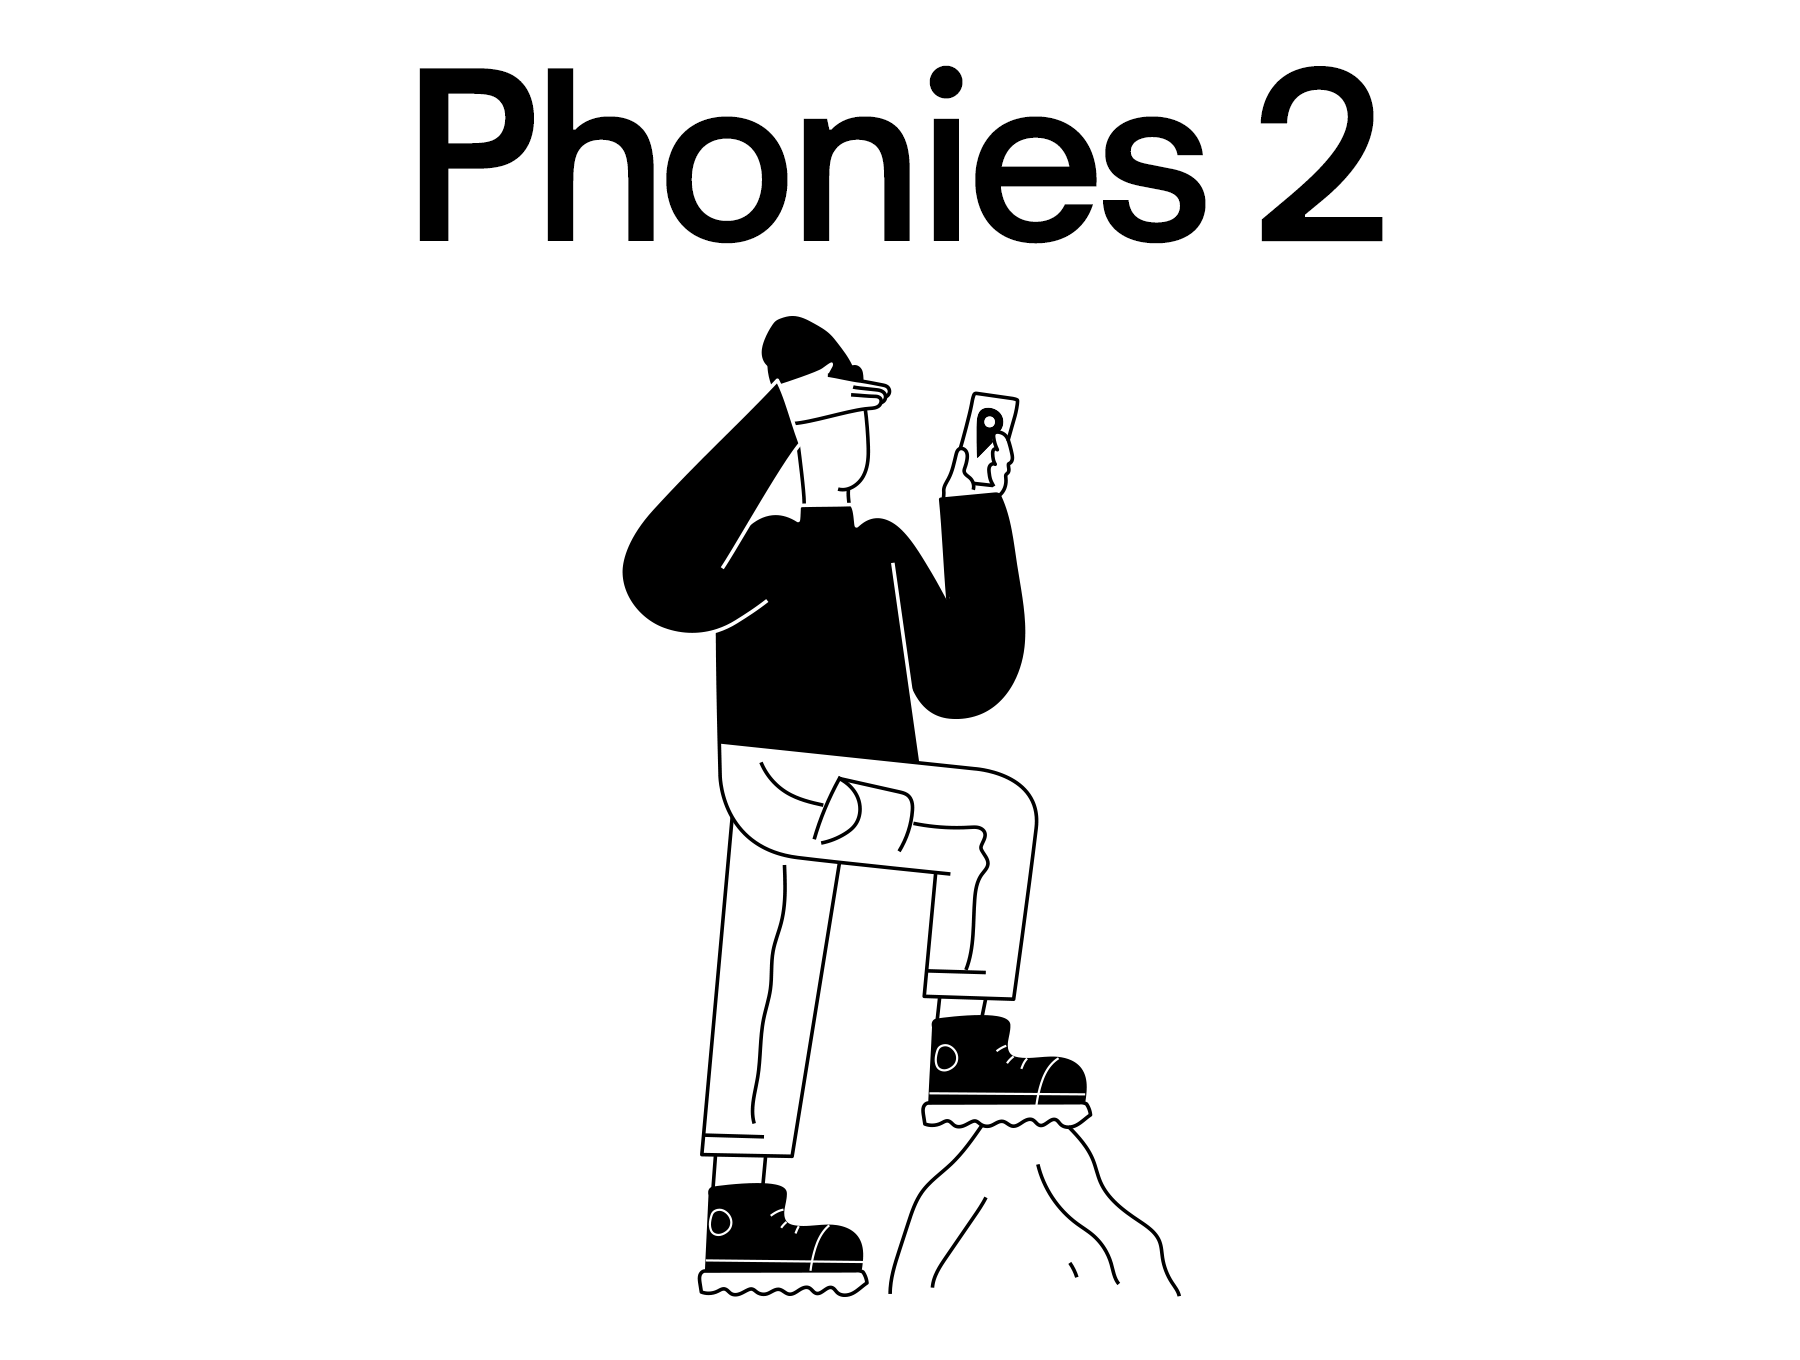 35个独特创意人与手机互动场景矢量插画素材 Phonies